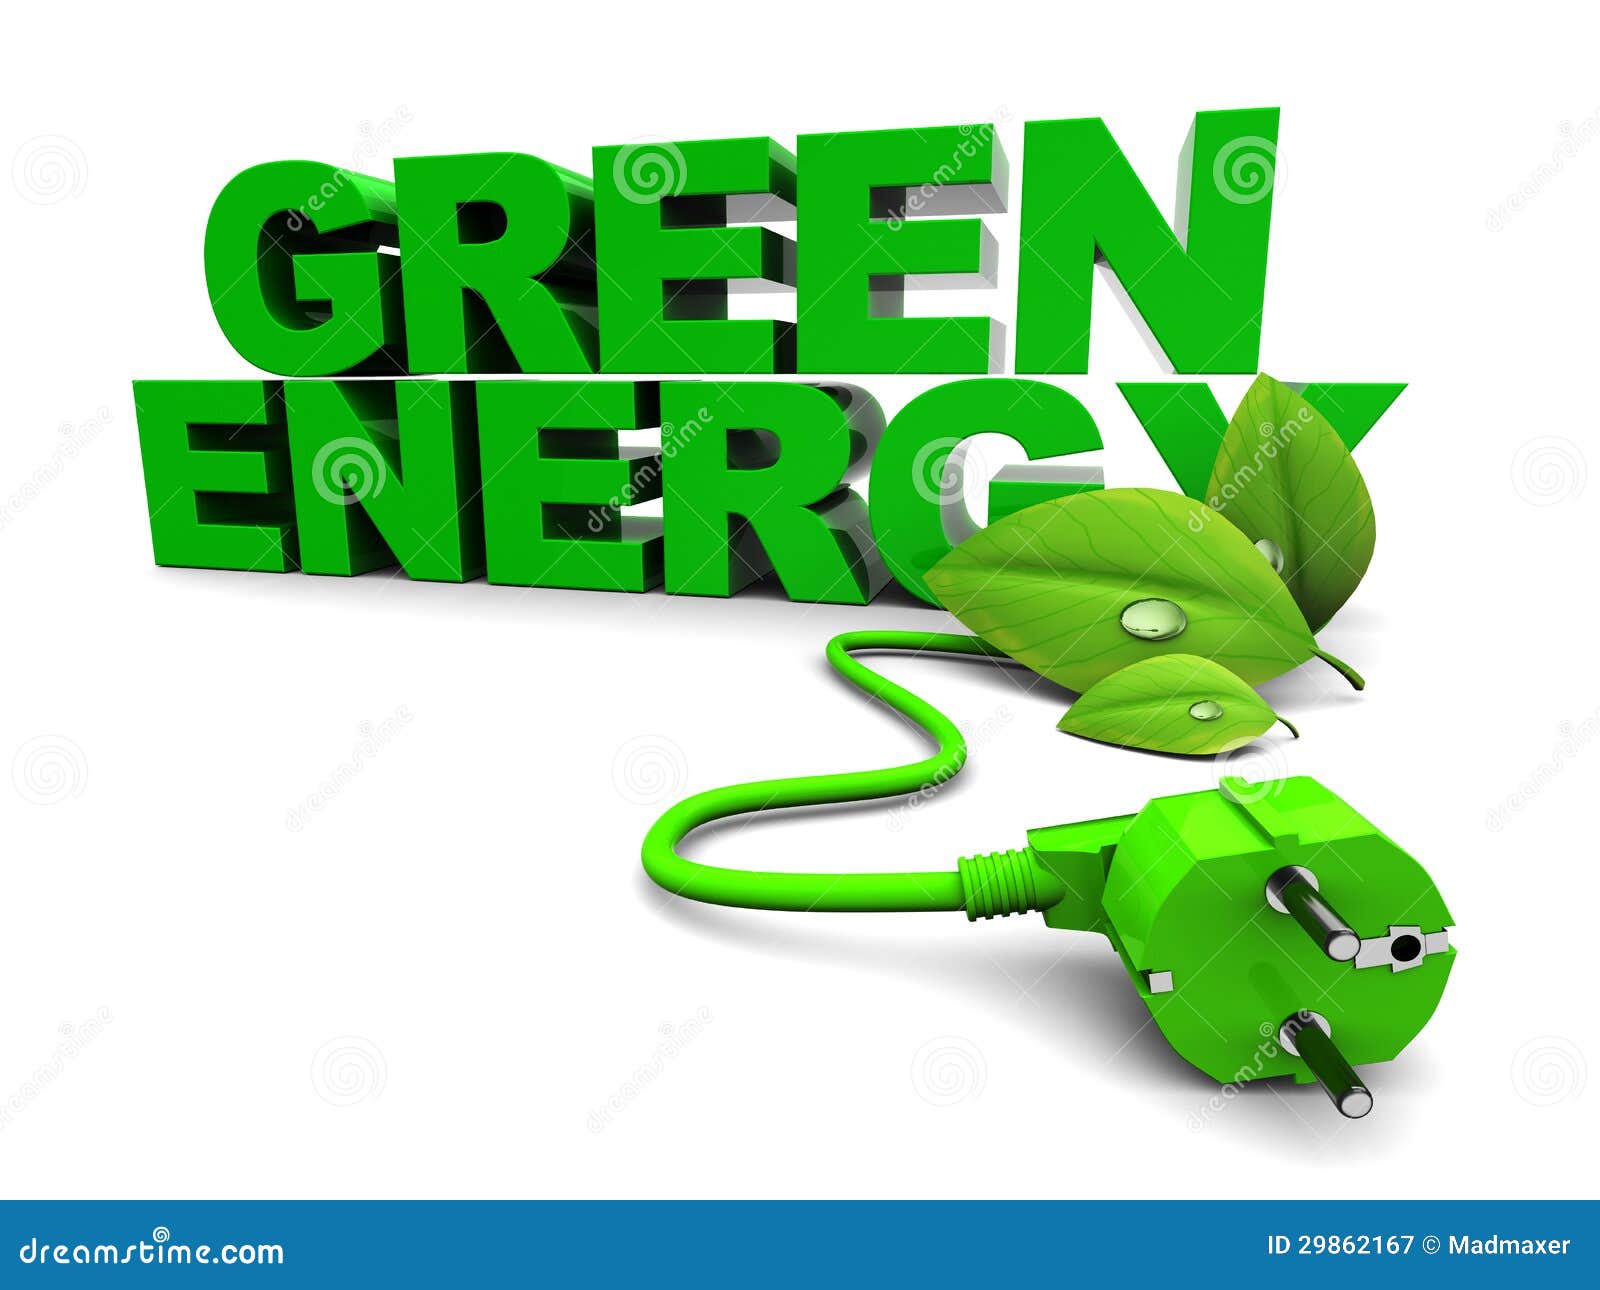 d-illustration-green-energy-sign-over-white-background-29862167.jpg